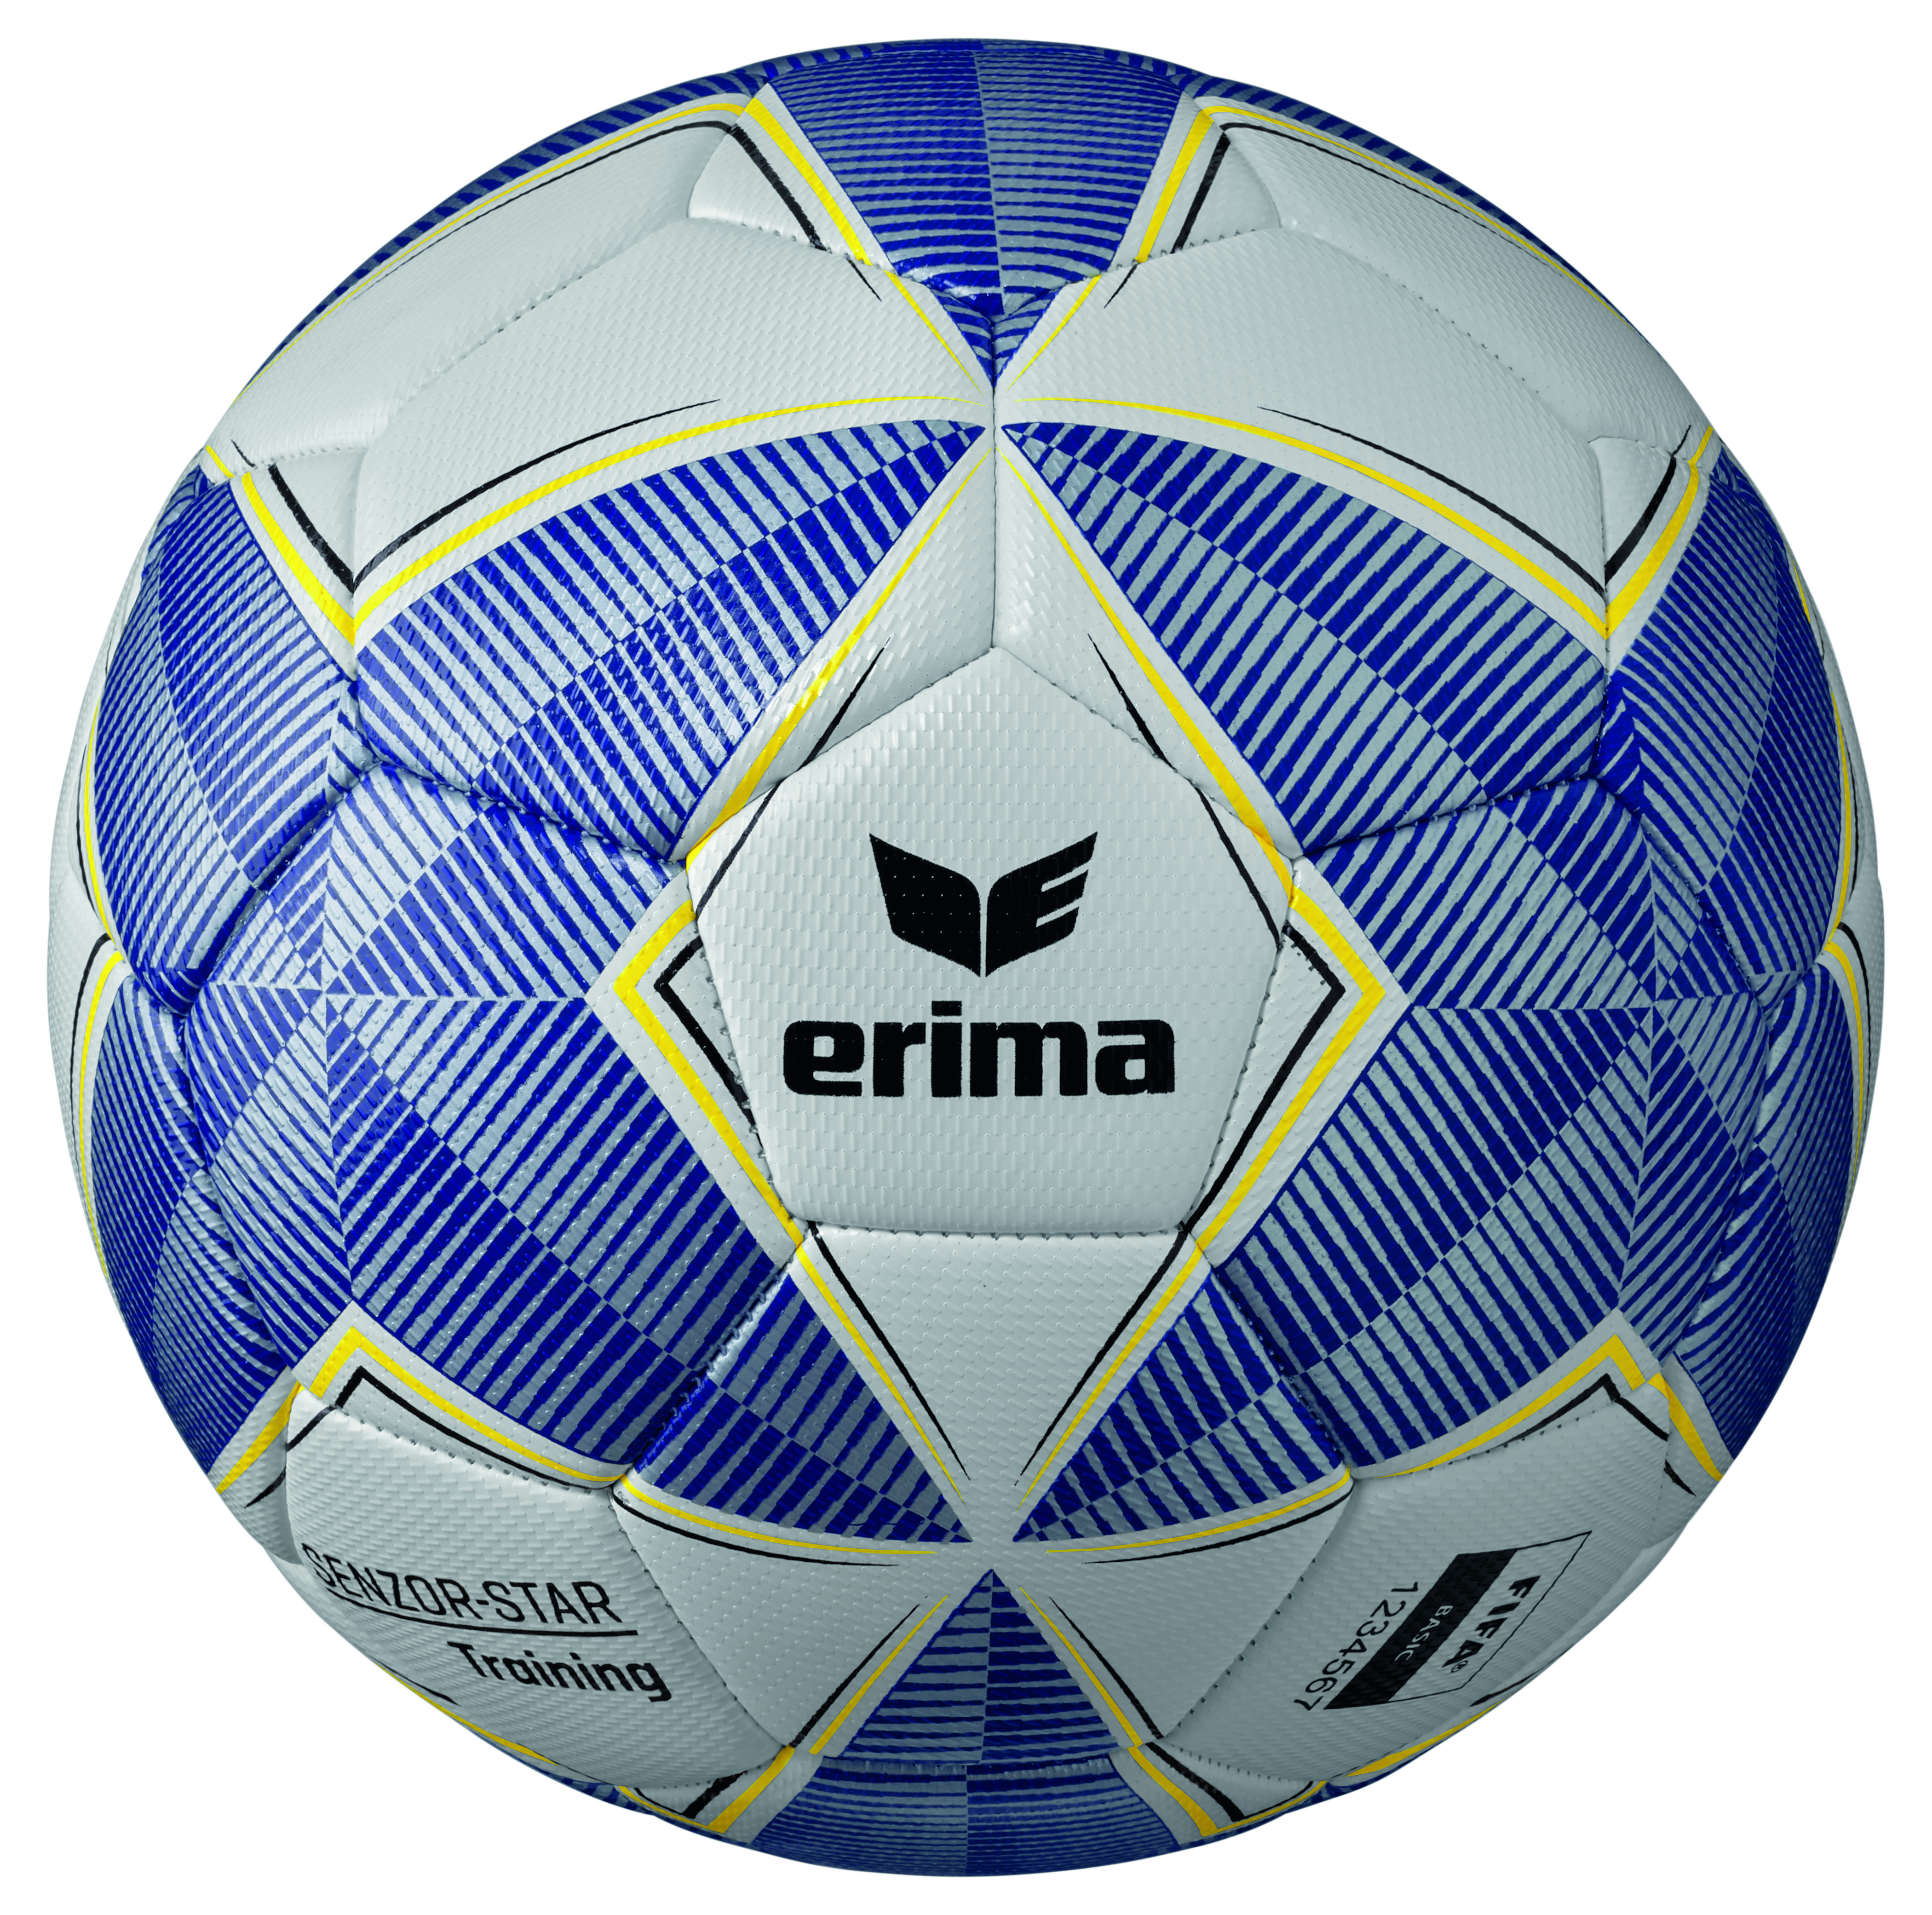 Erima Fußball Senzor-Star Training Gr.4 blau-silber